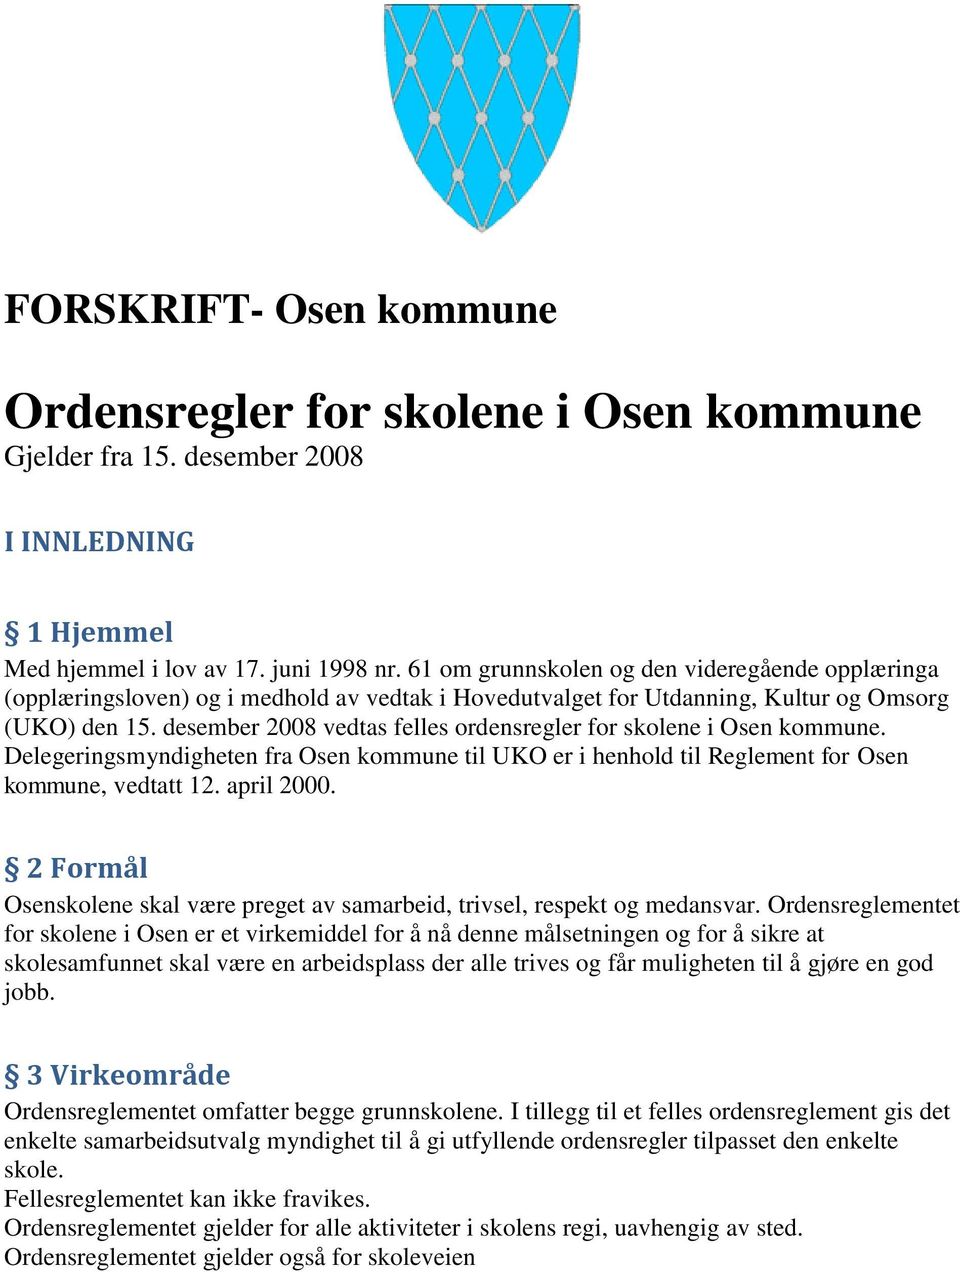 desember 2008 vedtas felles ordensregler for skolene i Osen kommune. Delegeringsmyndigheten fra Osen kommune til UKO er i henhold til Reglement for Osen kommune, vedtatt 12. april 2000.